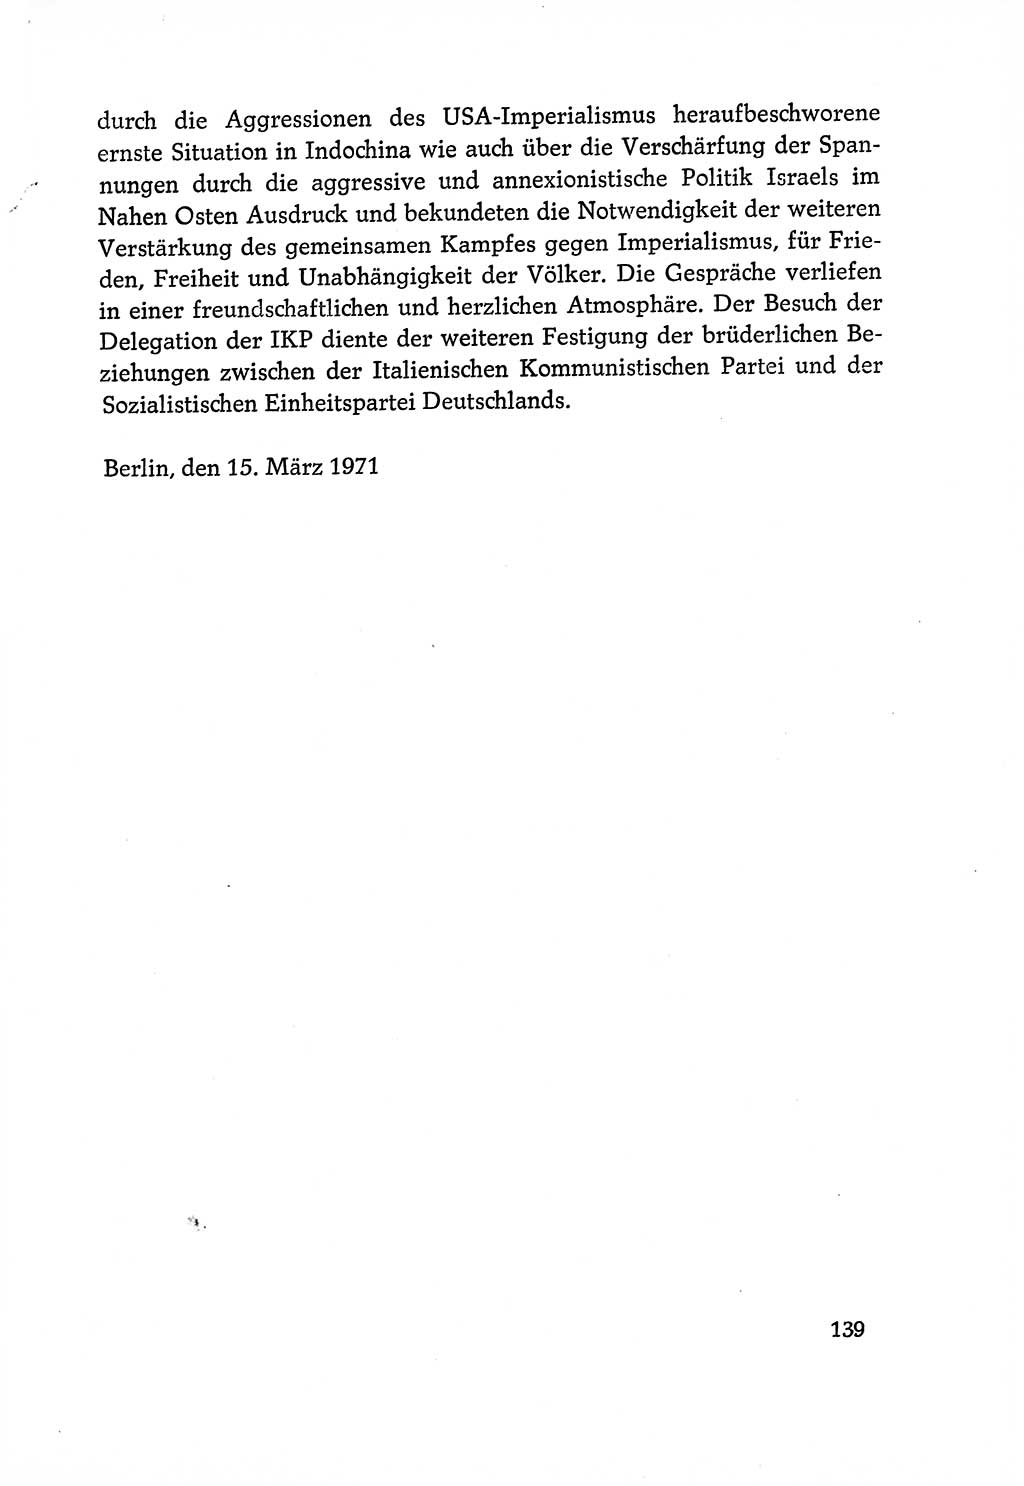 Dokumente der Sozialistischen Einheitspartei Deutschlands (SED) [Deutsche Demokratische Republik (DDR)] 1970-1971, Seite 139 (Dok. SED DDR 1970-1971, S. 139)